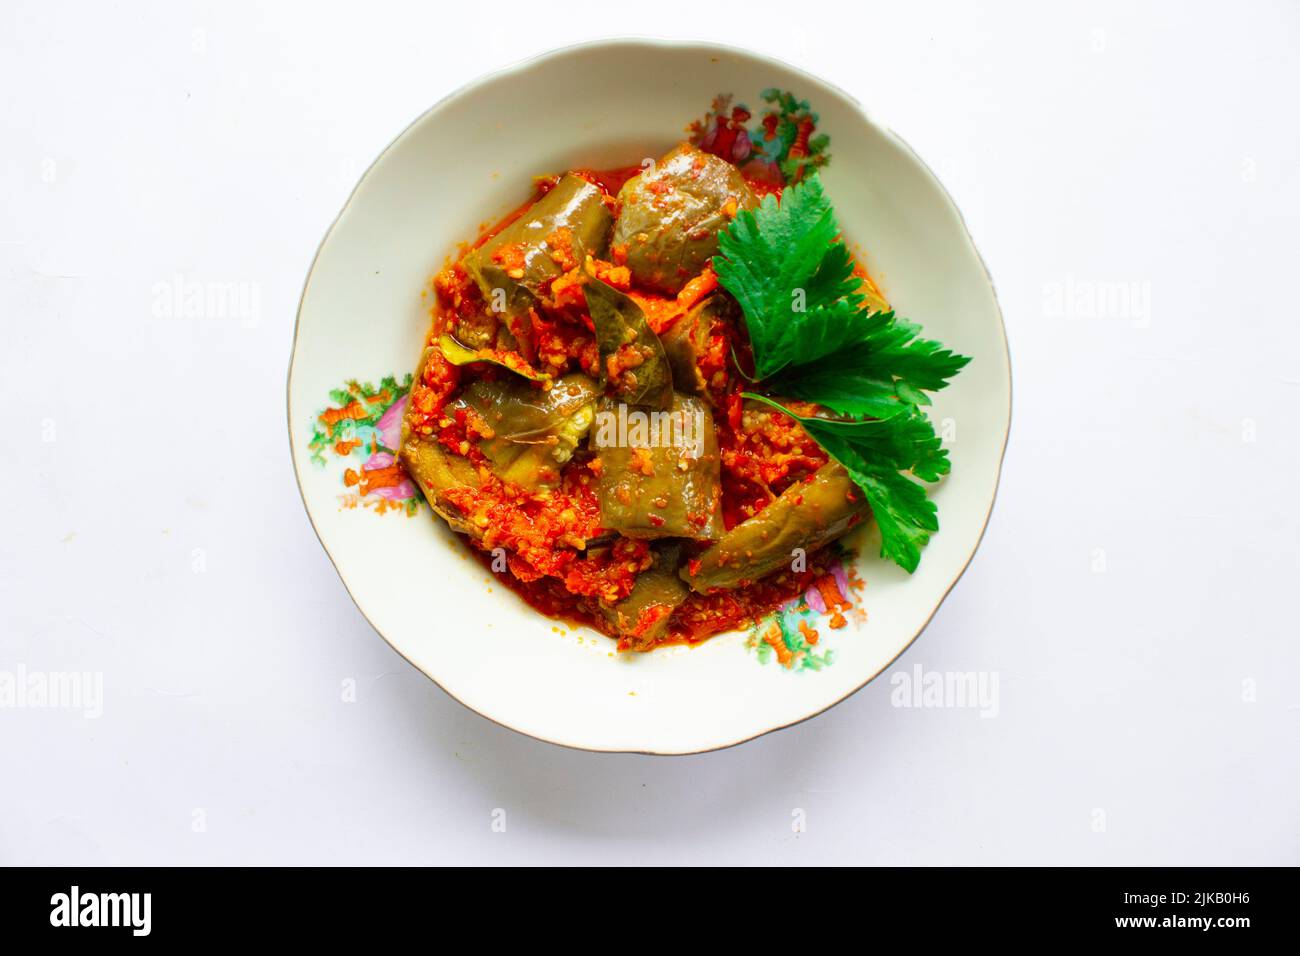 sambal Terong oder Auberginen-Sauce ist indonesische traditionelle Food Chilisauce, die aus Chilies und Auberginen hergestellt wird, werden zerkleinert und dann isoliert auf bla gebraten Stockfoto